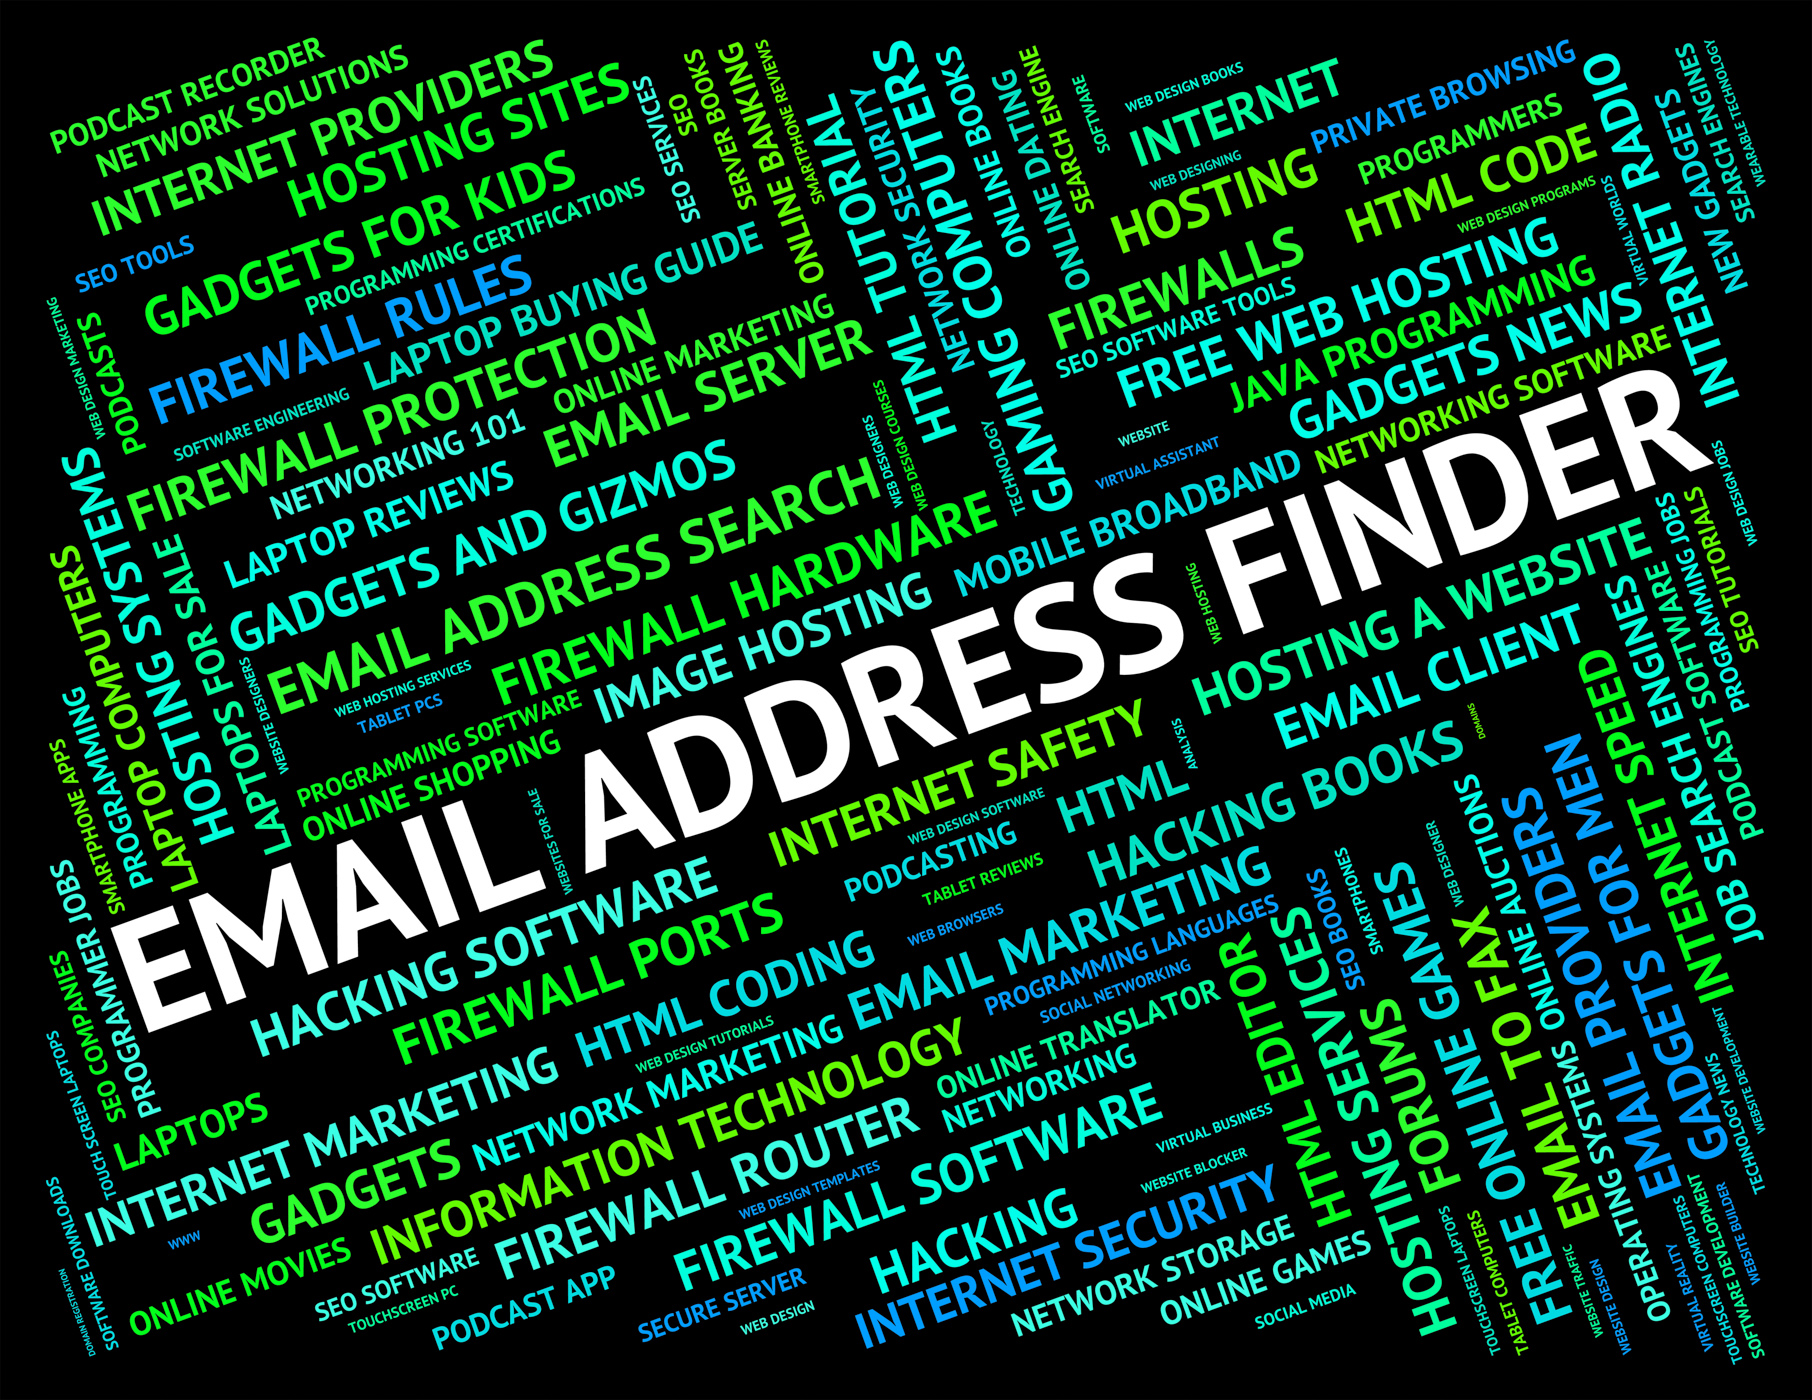 find addresses for free online